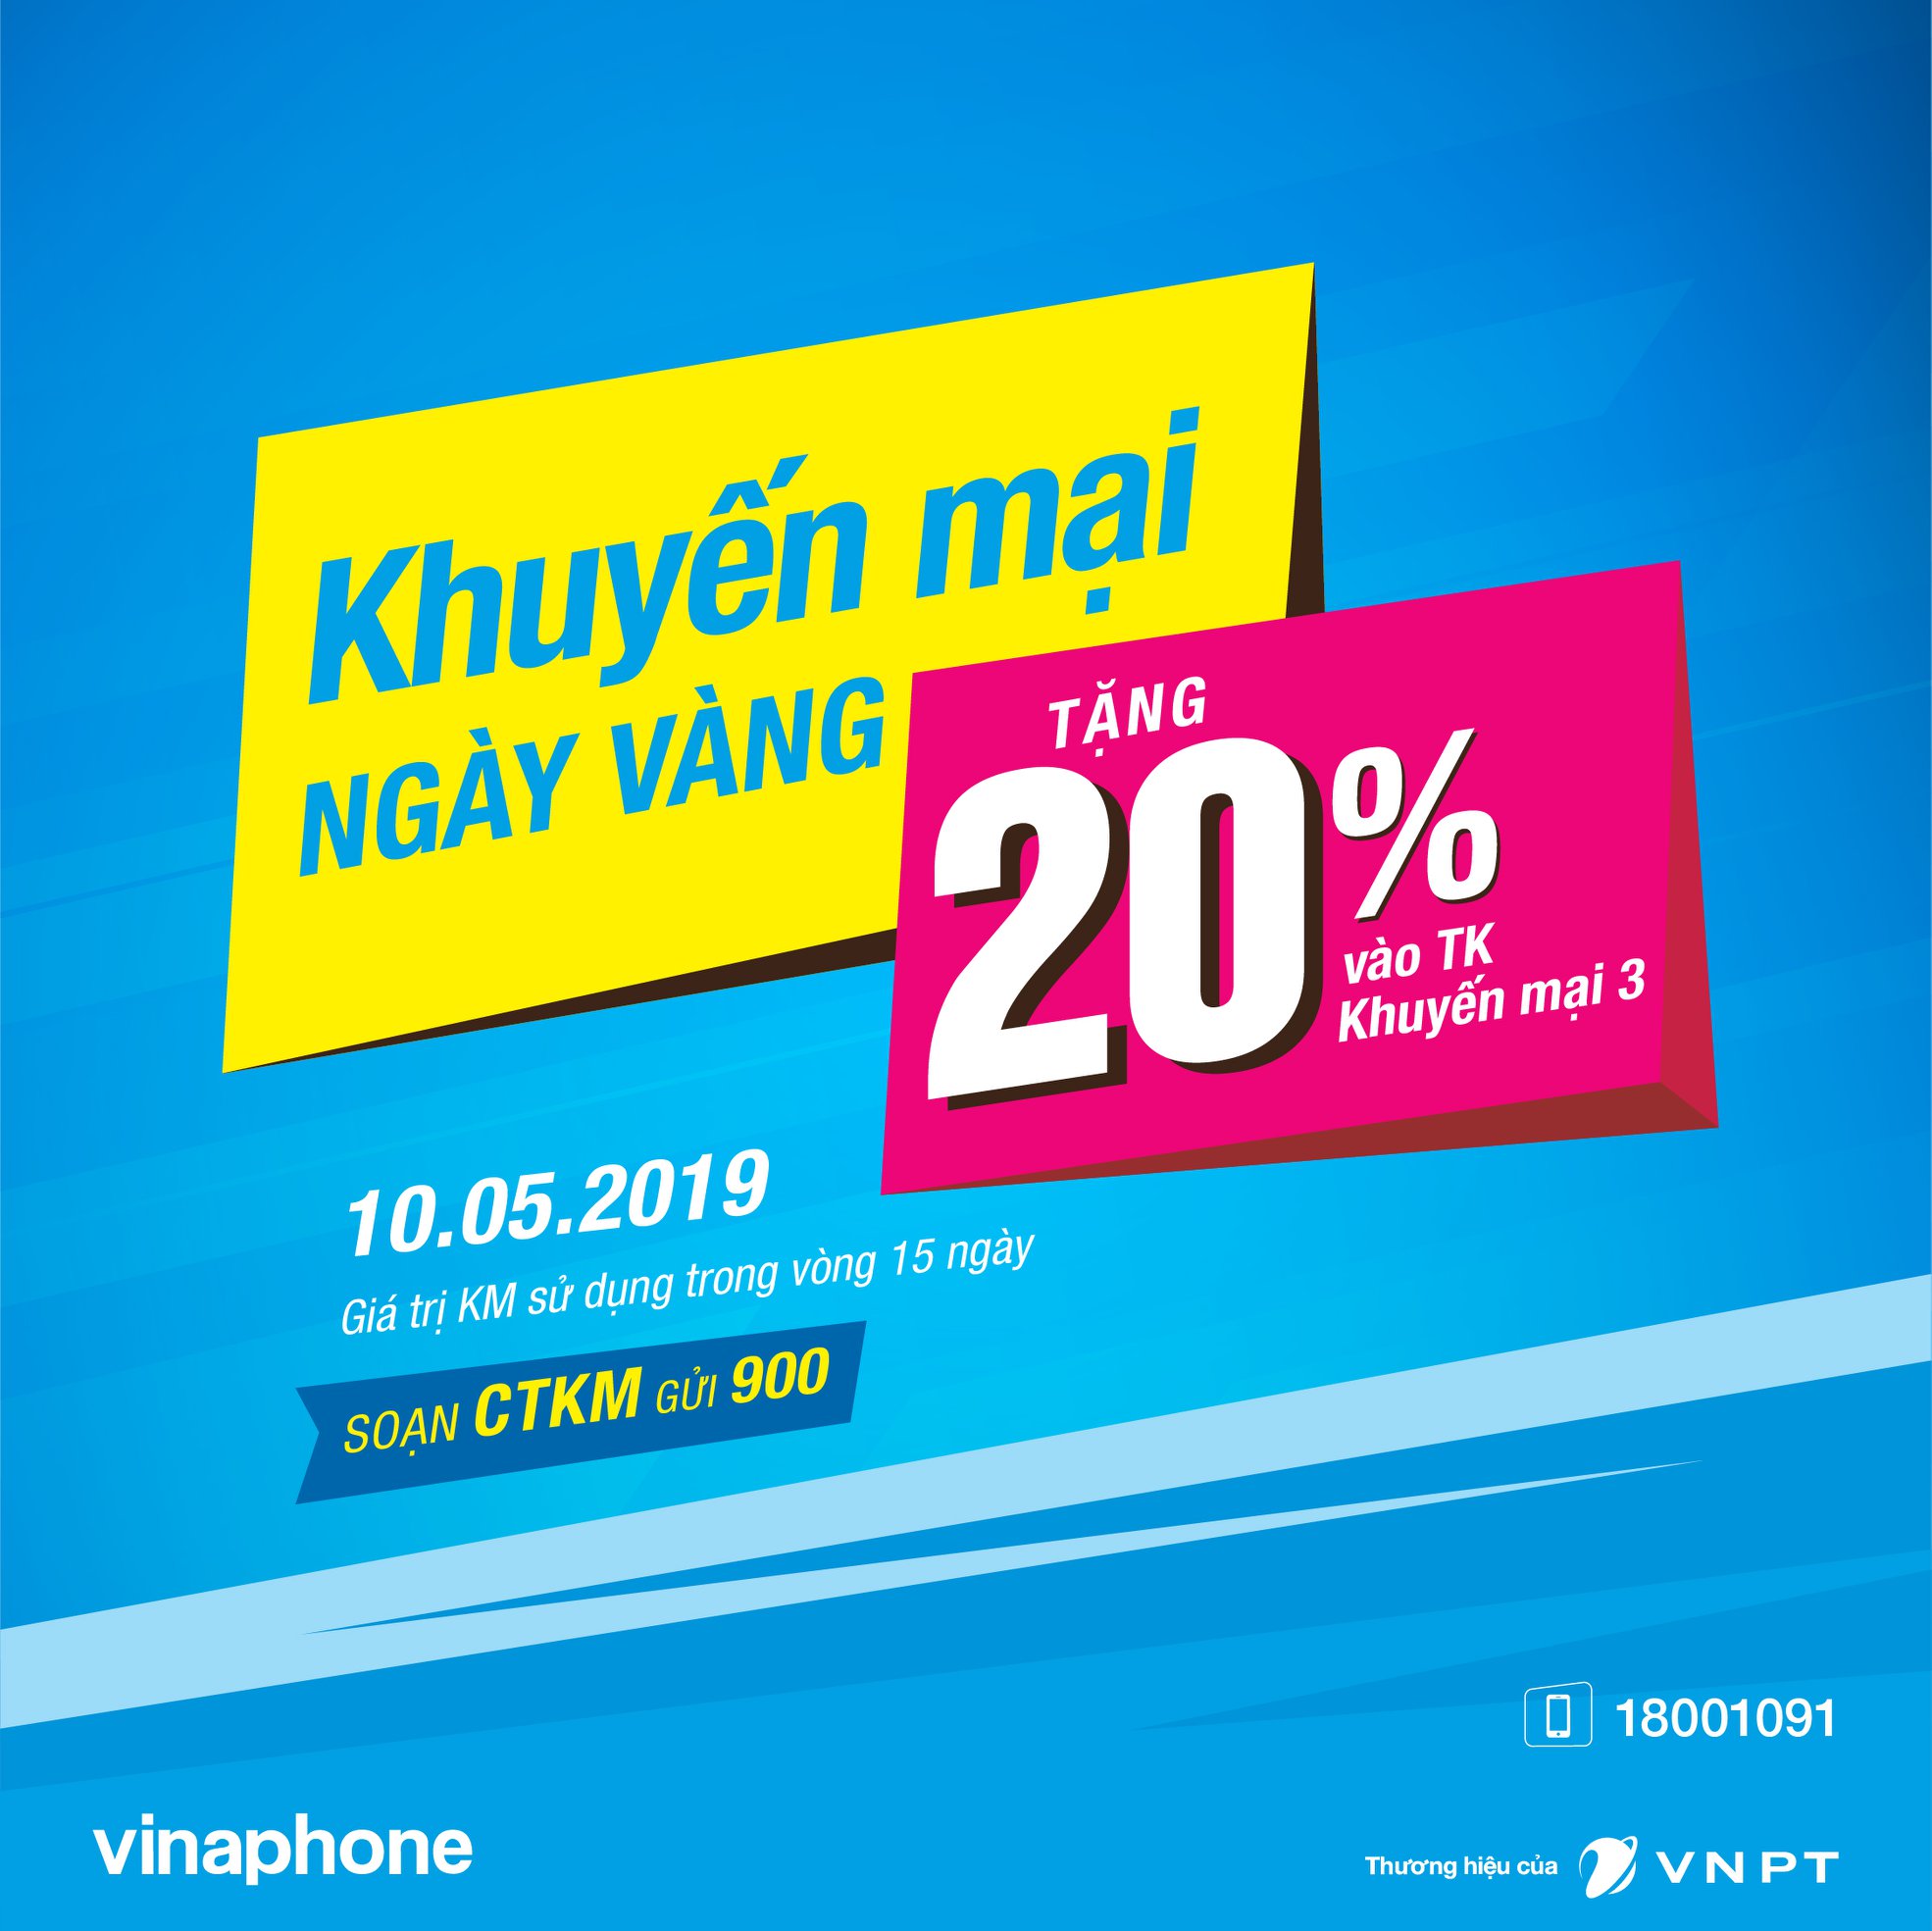 Khuyến mãi Vinaphone ngày vàng 10/5/2019 tặng 20% giá trị thẻ nạp